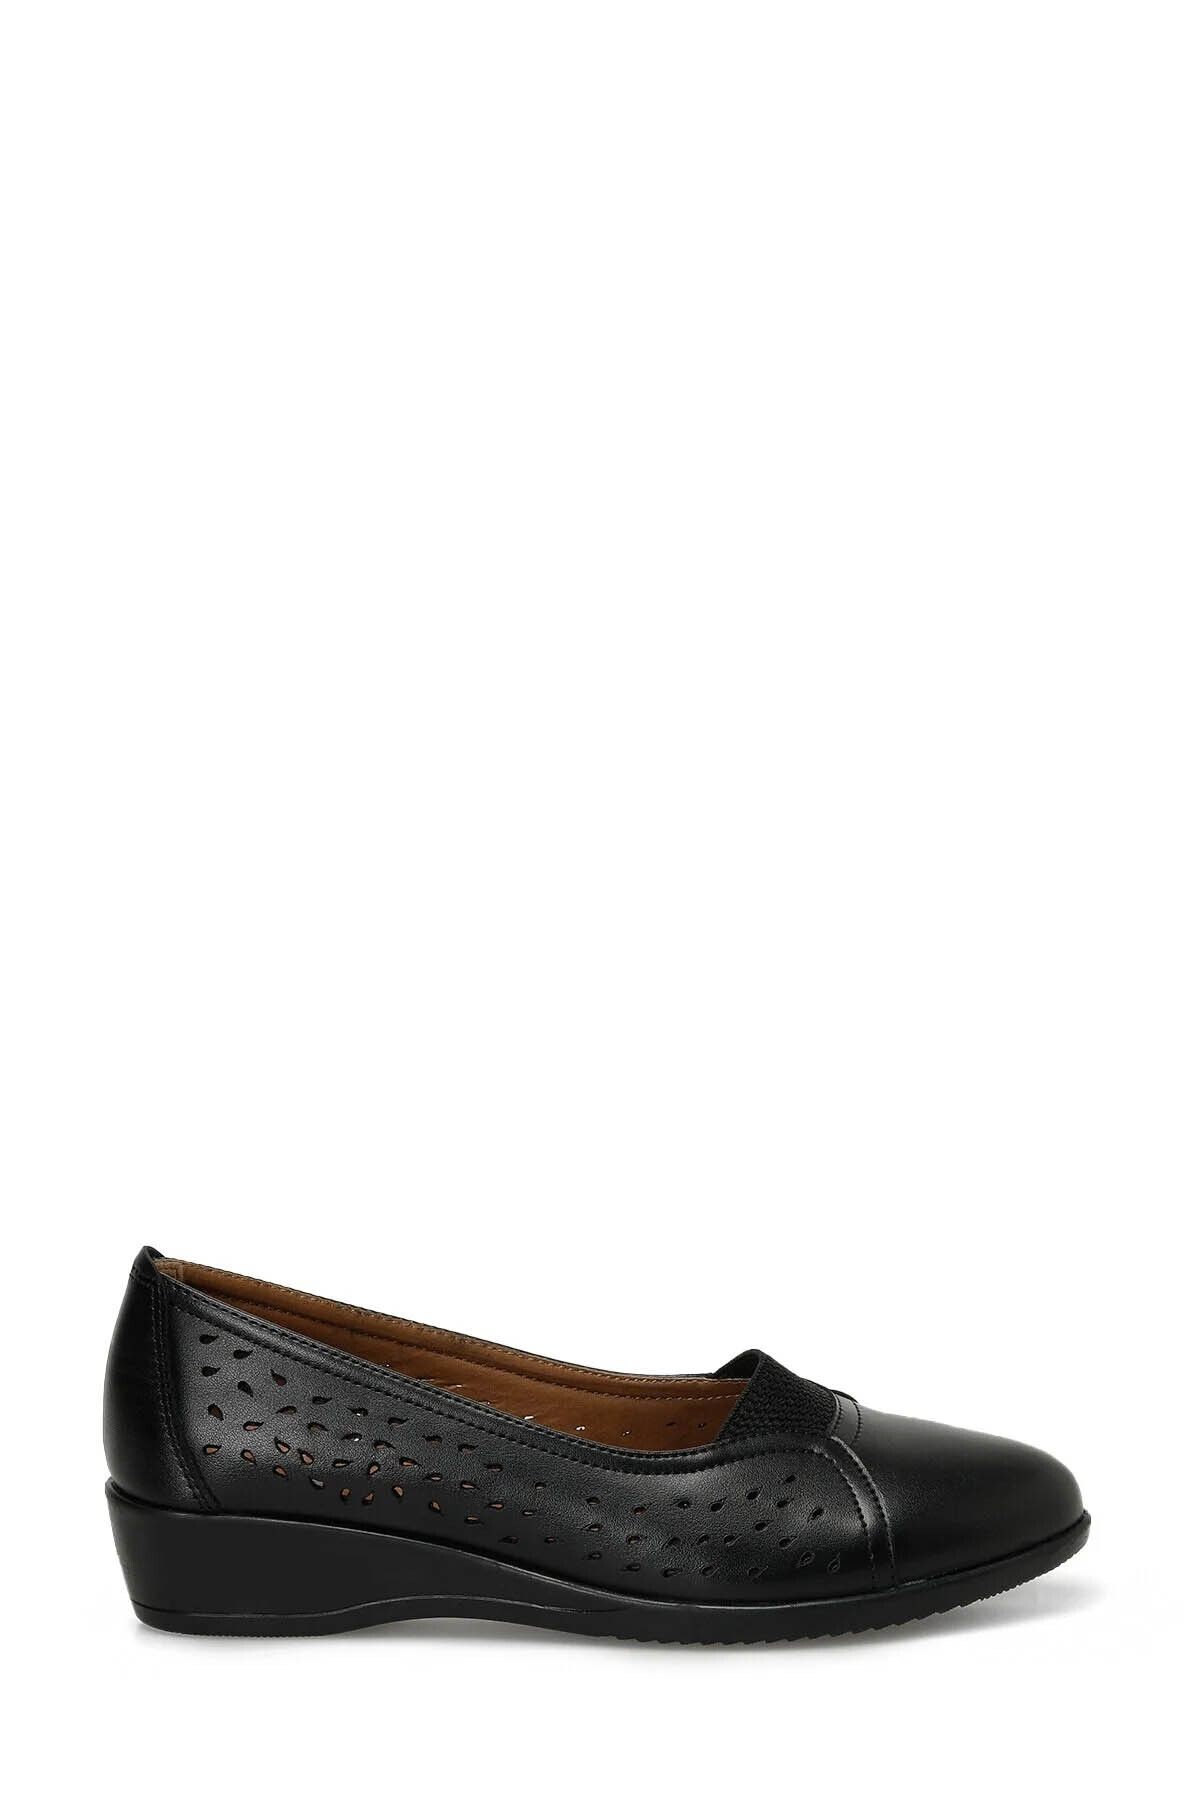 Polaris Kadın Klasik Ayakkabı Siyah 101569155 166089.z4fx